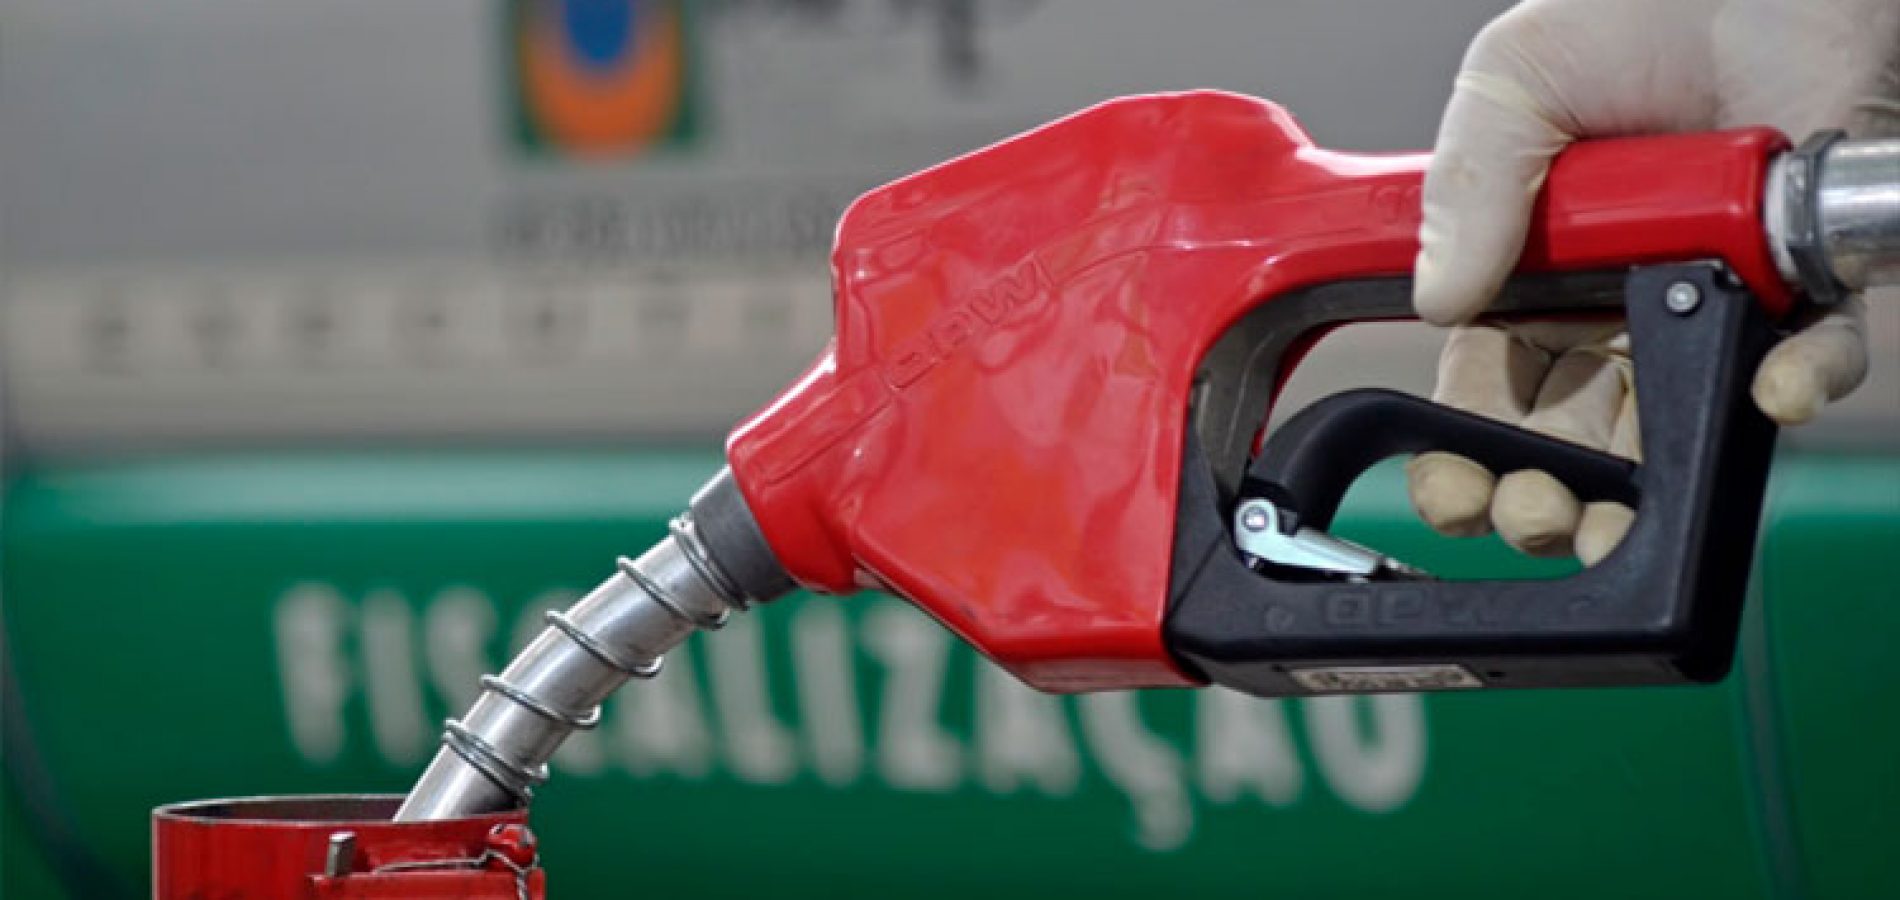 Preço de gasolina cai 7,1% em abril após um mês de isolamento social; diesel cede 5,4%